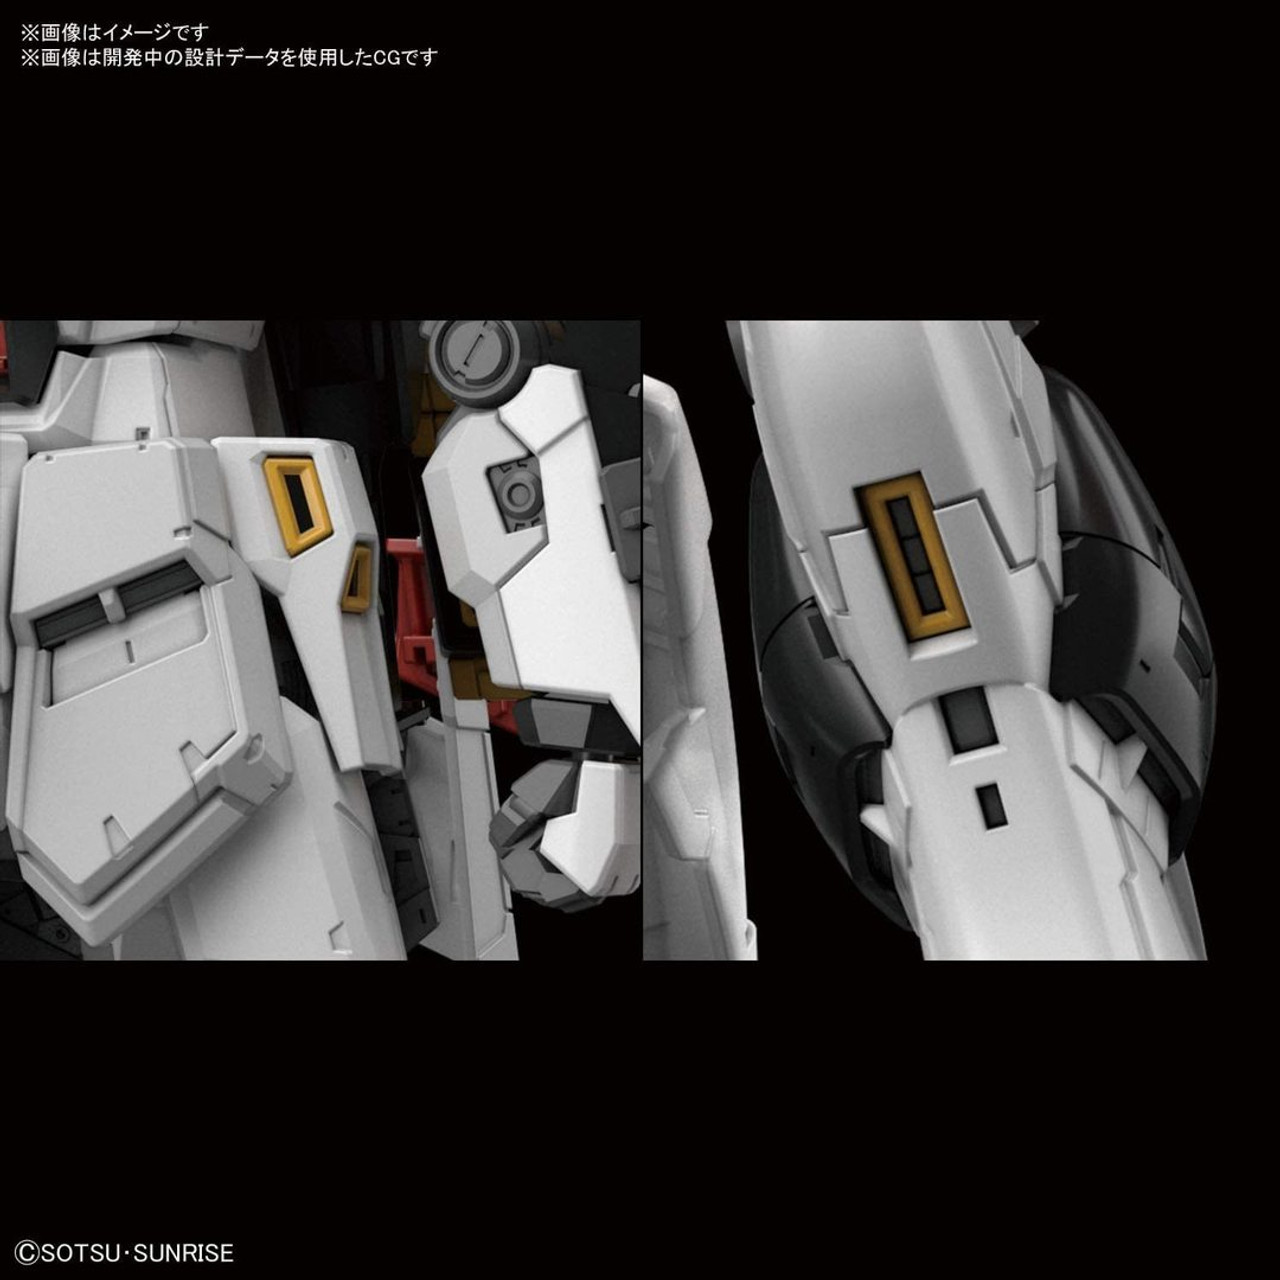 BAN2466963 Bandai RG 1/144 #32 Nu Gundam 'Char's Counterattack'